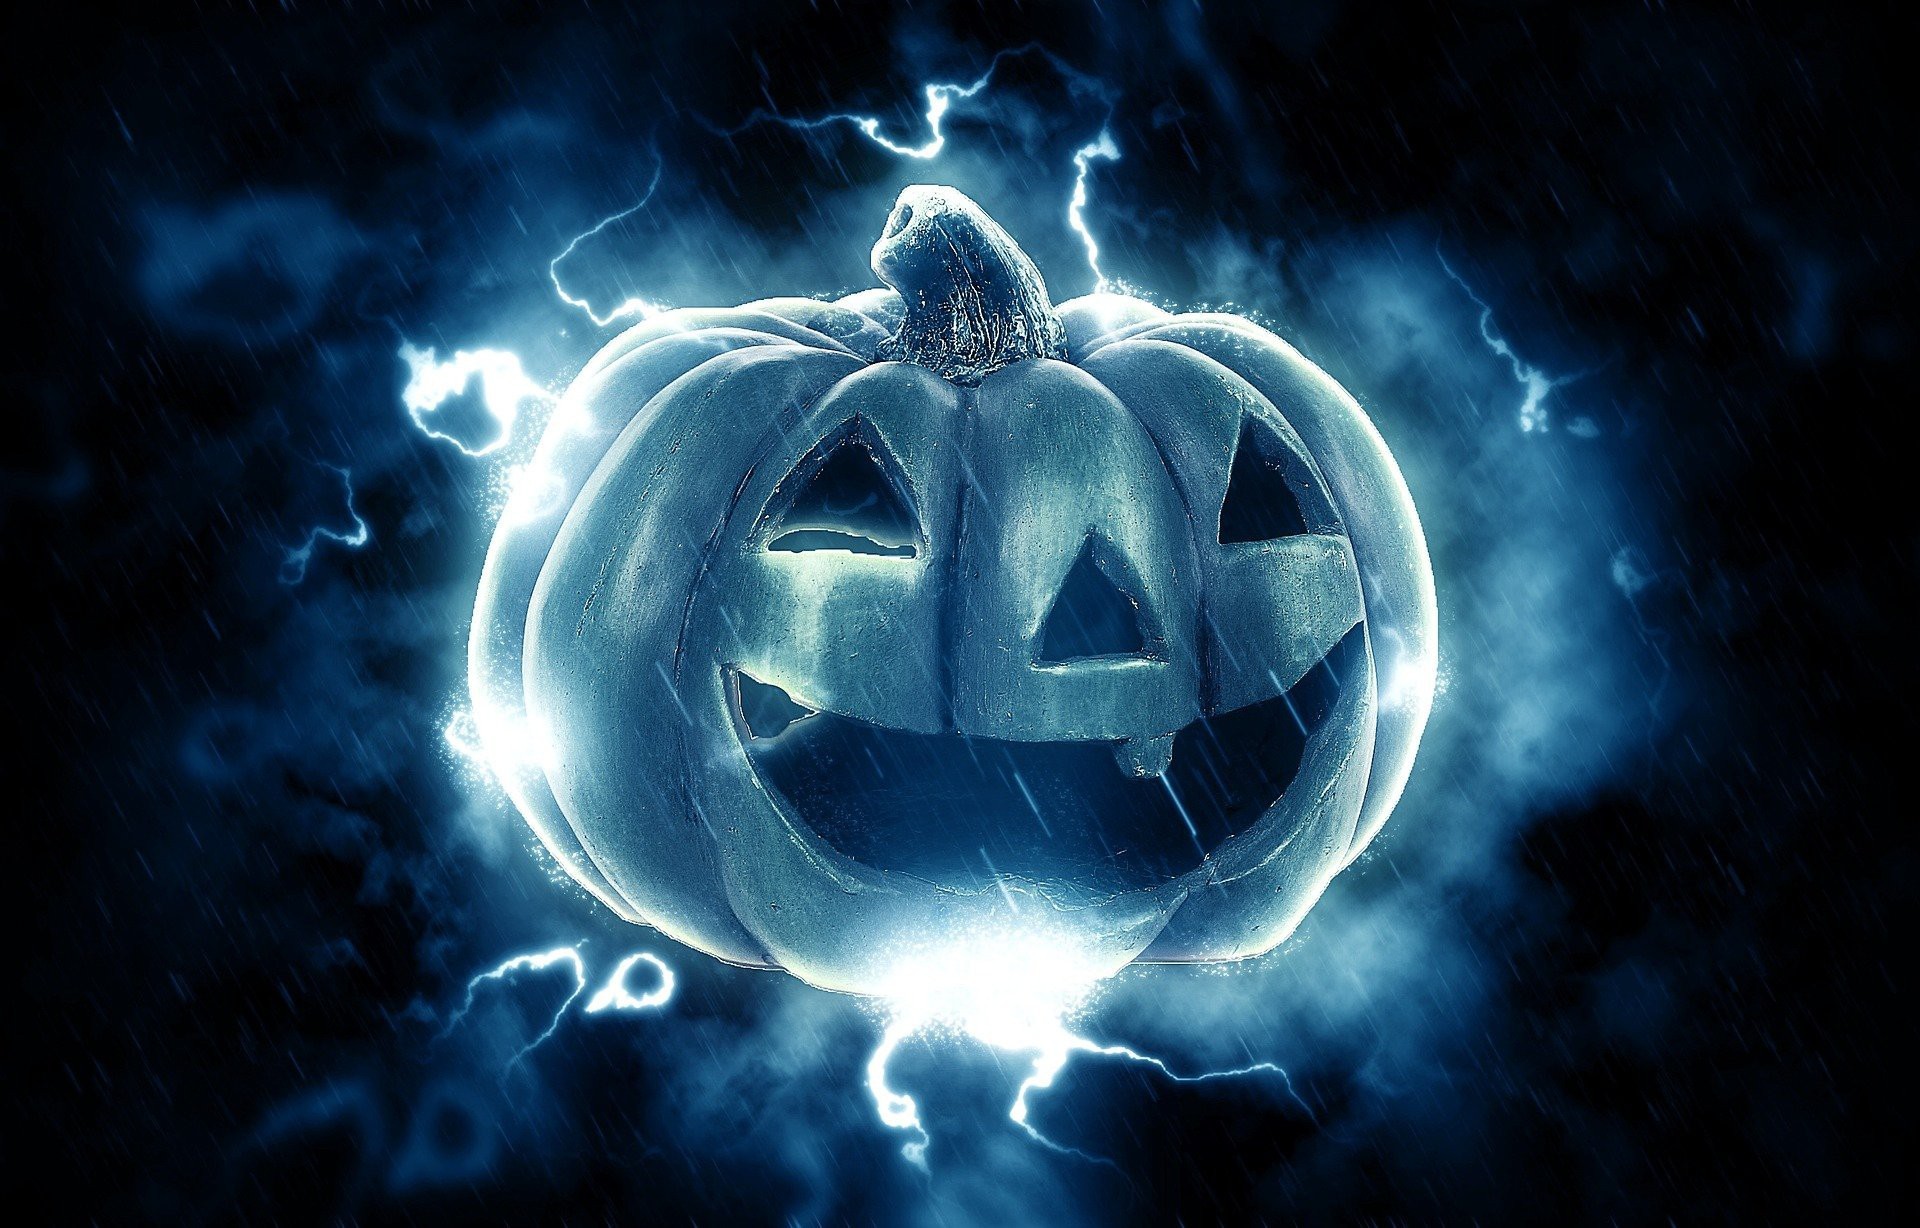 Halloween: Confira 10 filmes e séries para ver no “Dia das Bruxas